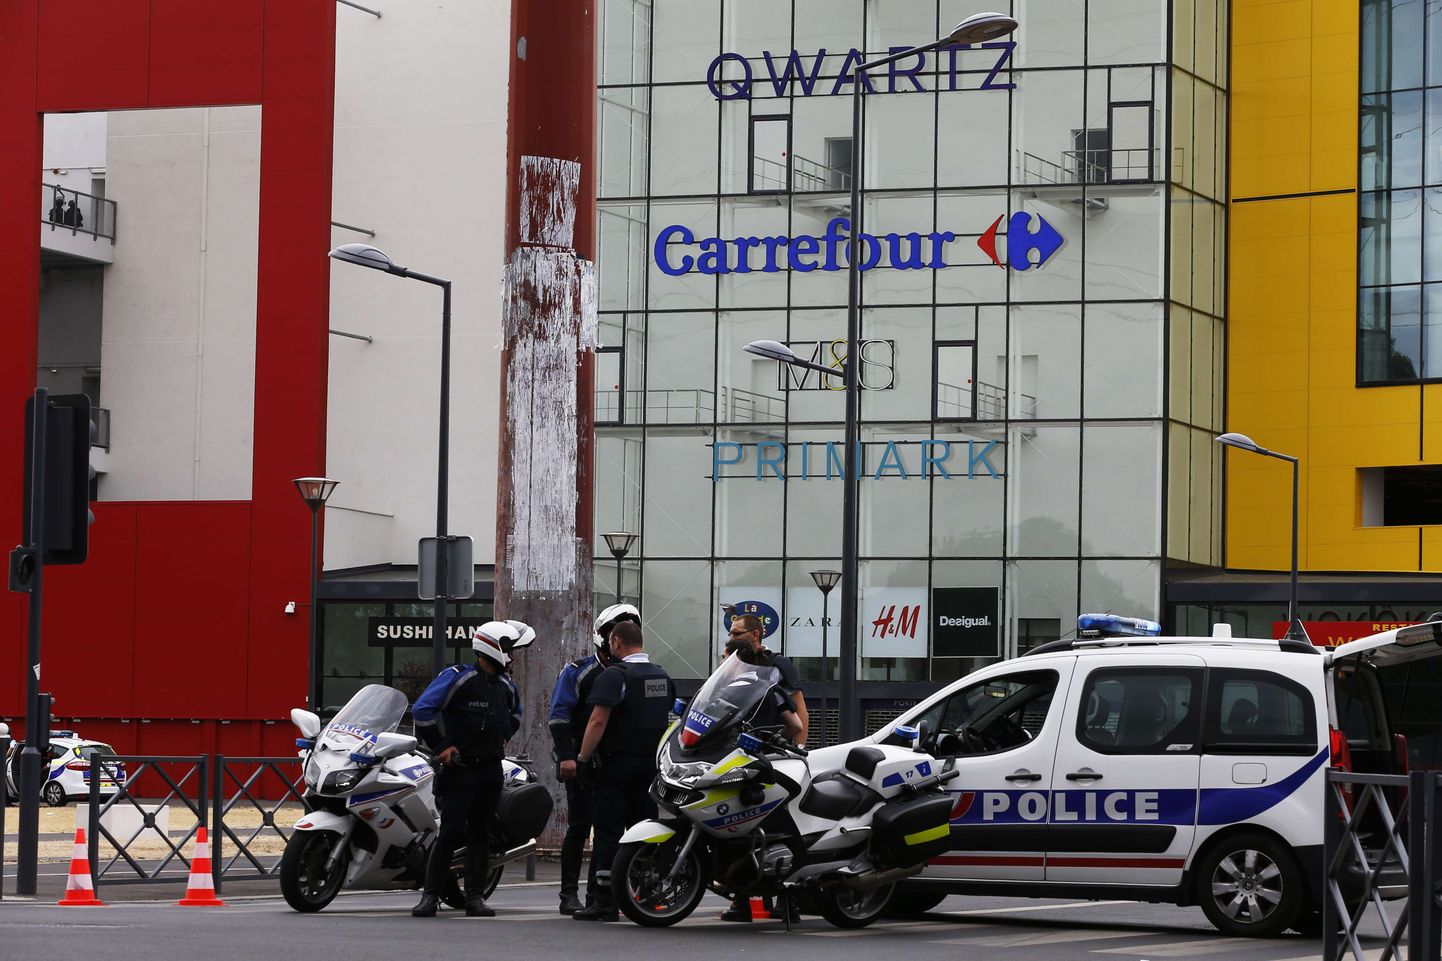 Prantsuse politseinikud Qwartzi kaubanduskeskuse juures Villeneuve-La-Garenne´is.